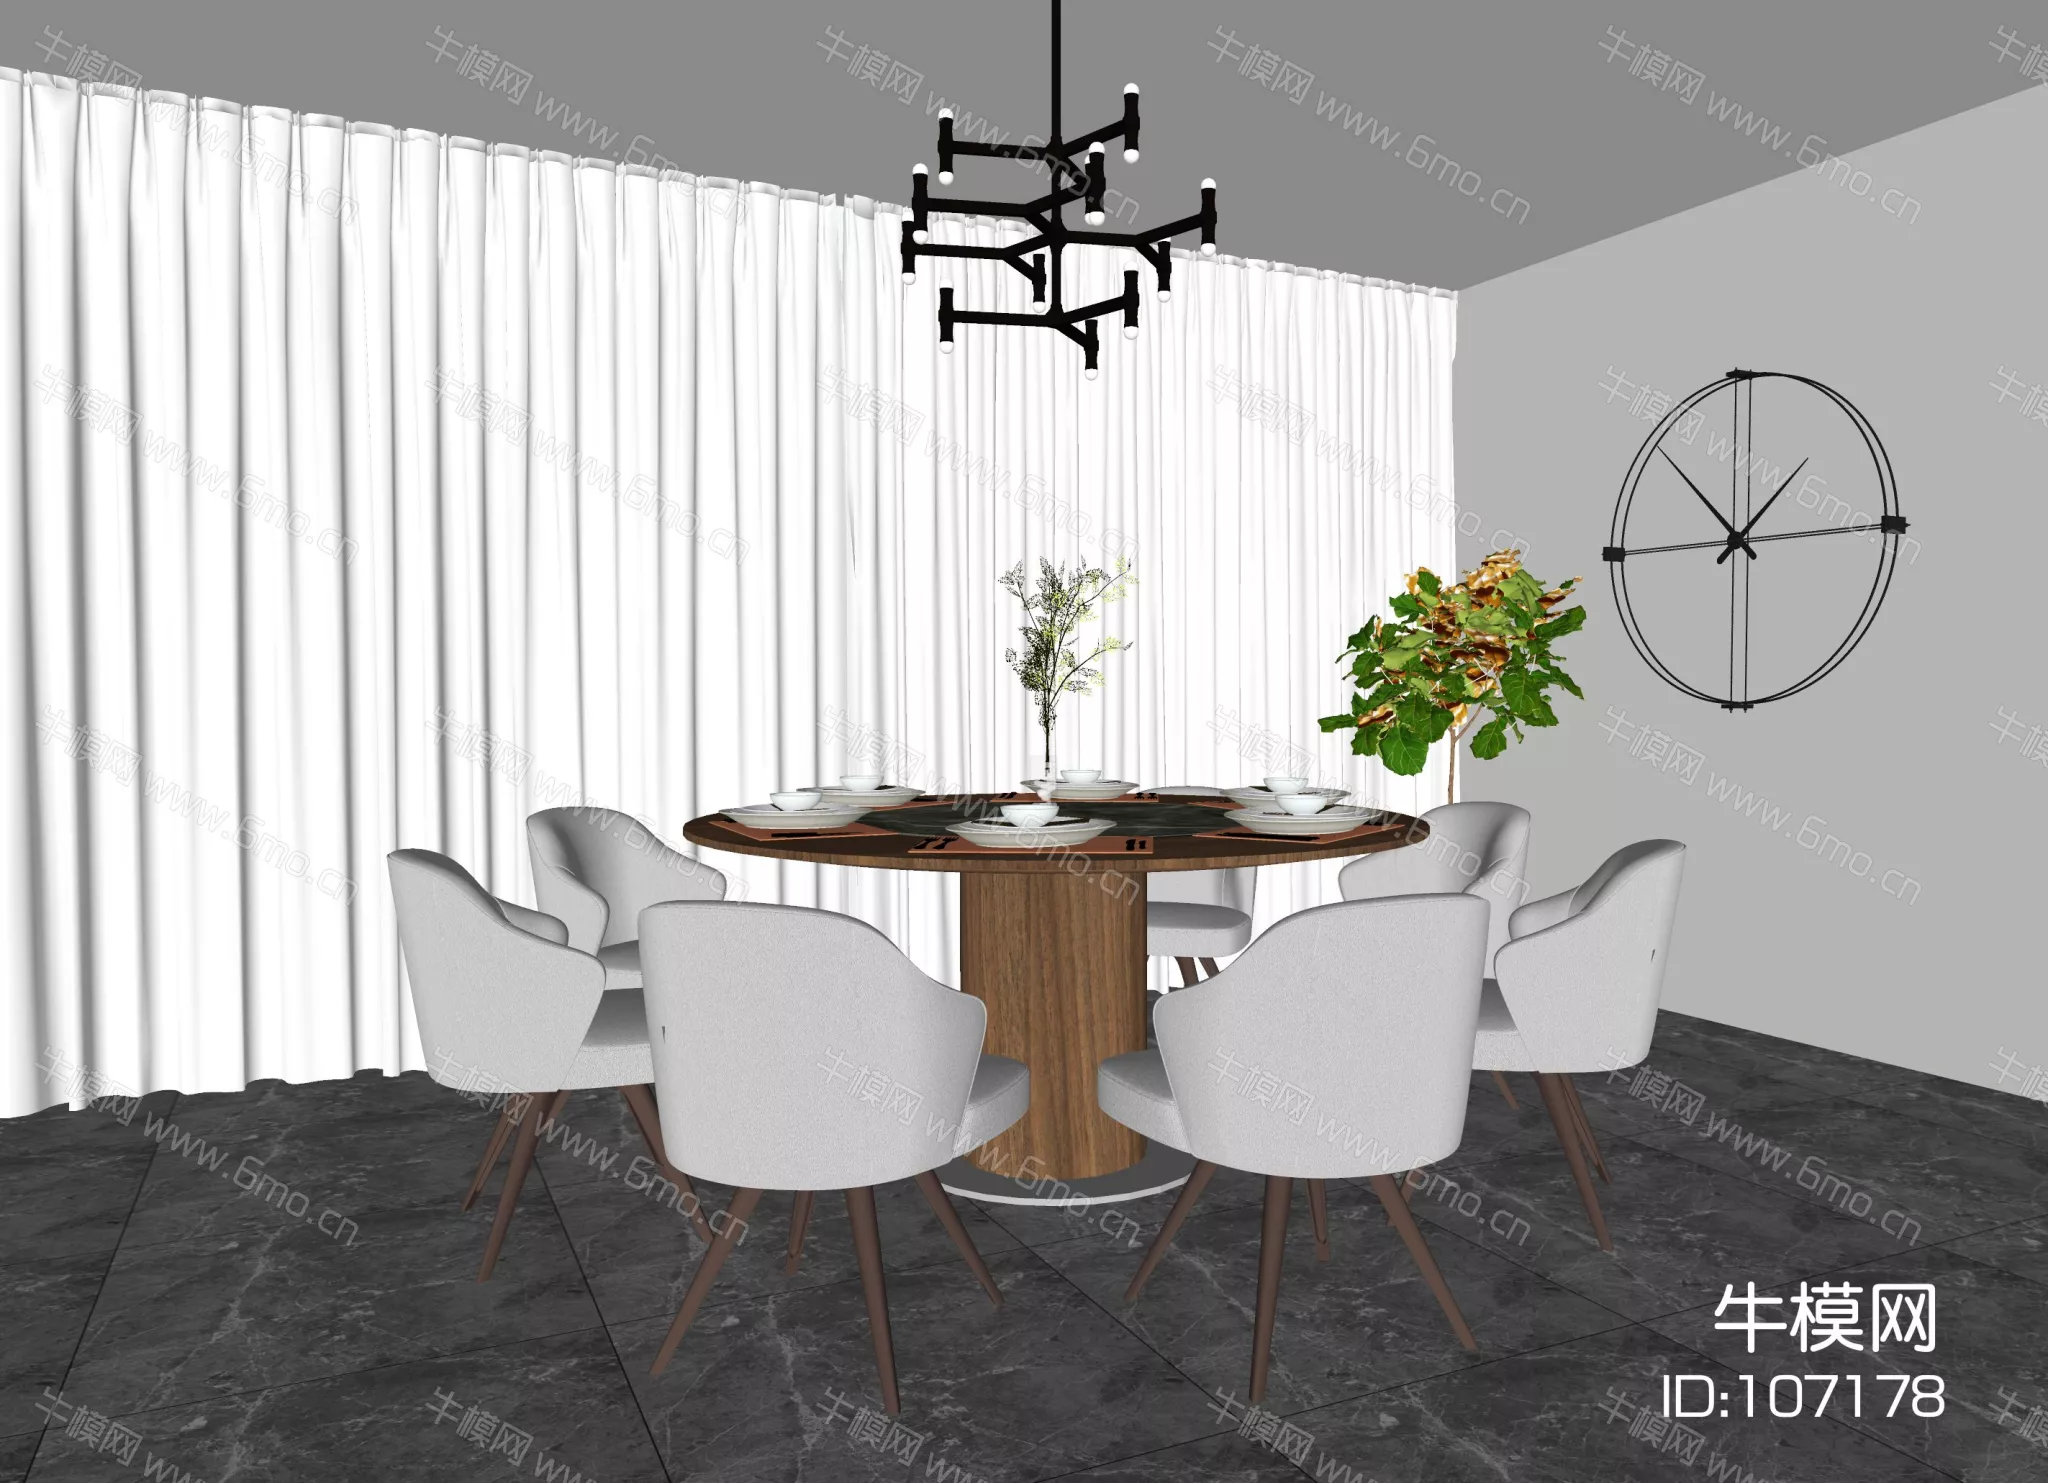 MODERN DINING TABLE SET - SKETCHUP 3D MODEL - ENSCAPE - 107178